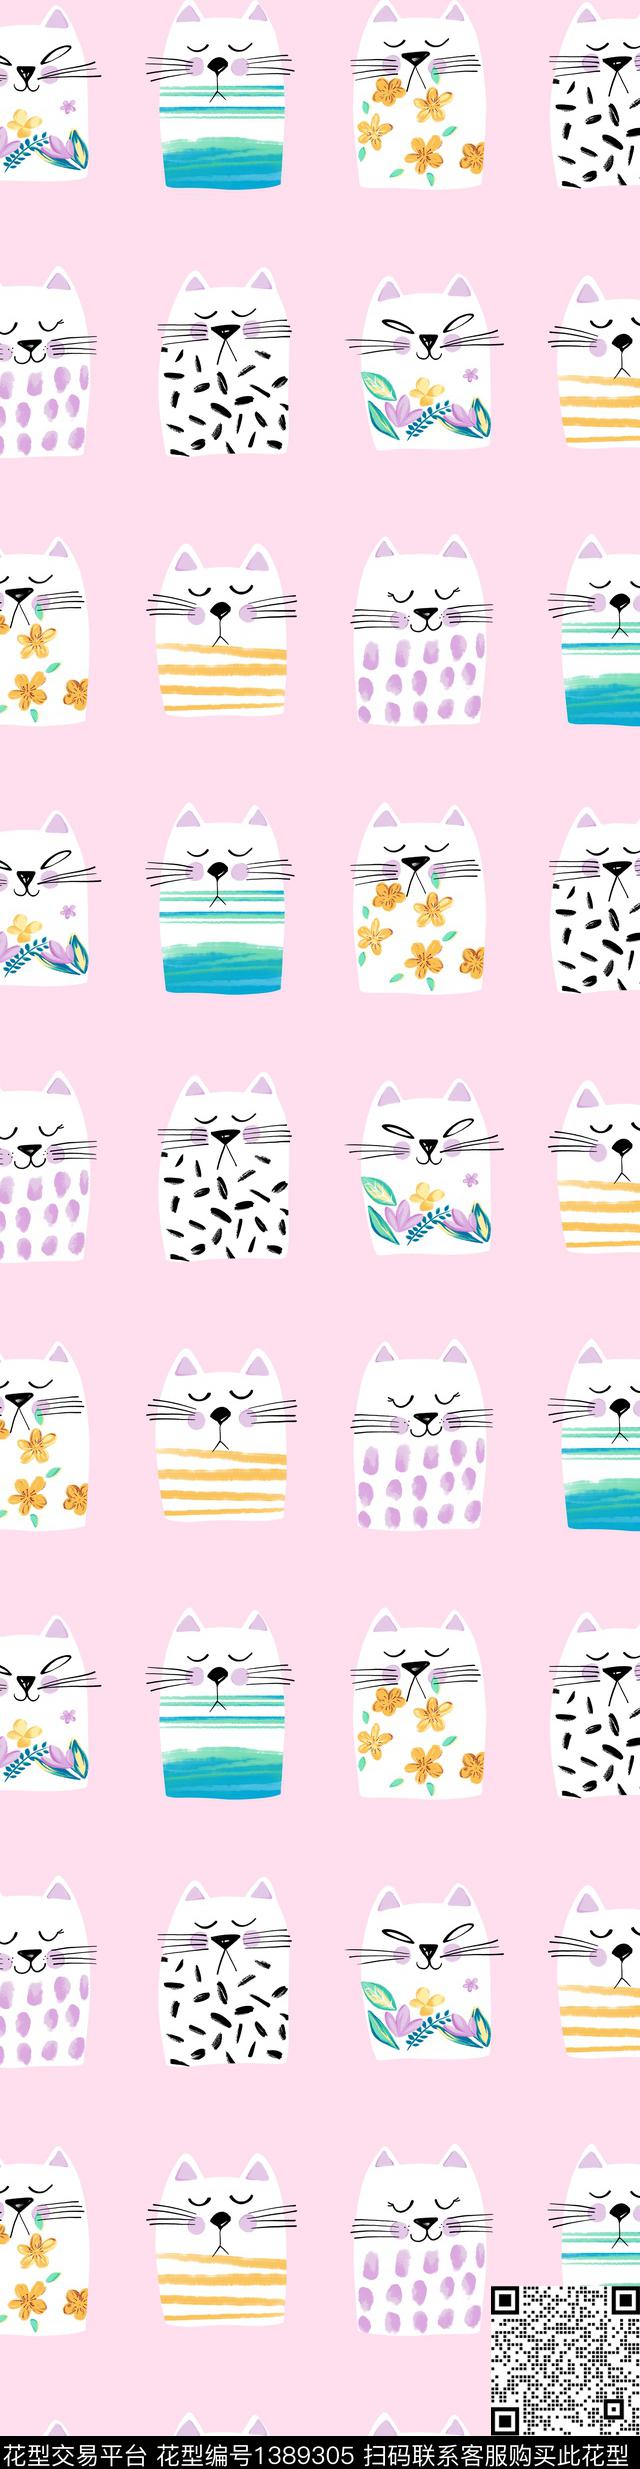 粉小喵.jpg - 1389305 - 卡通人物 可爱 猫 - 传统印花花型 － 床品花型设计 － 瓦栏